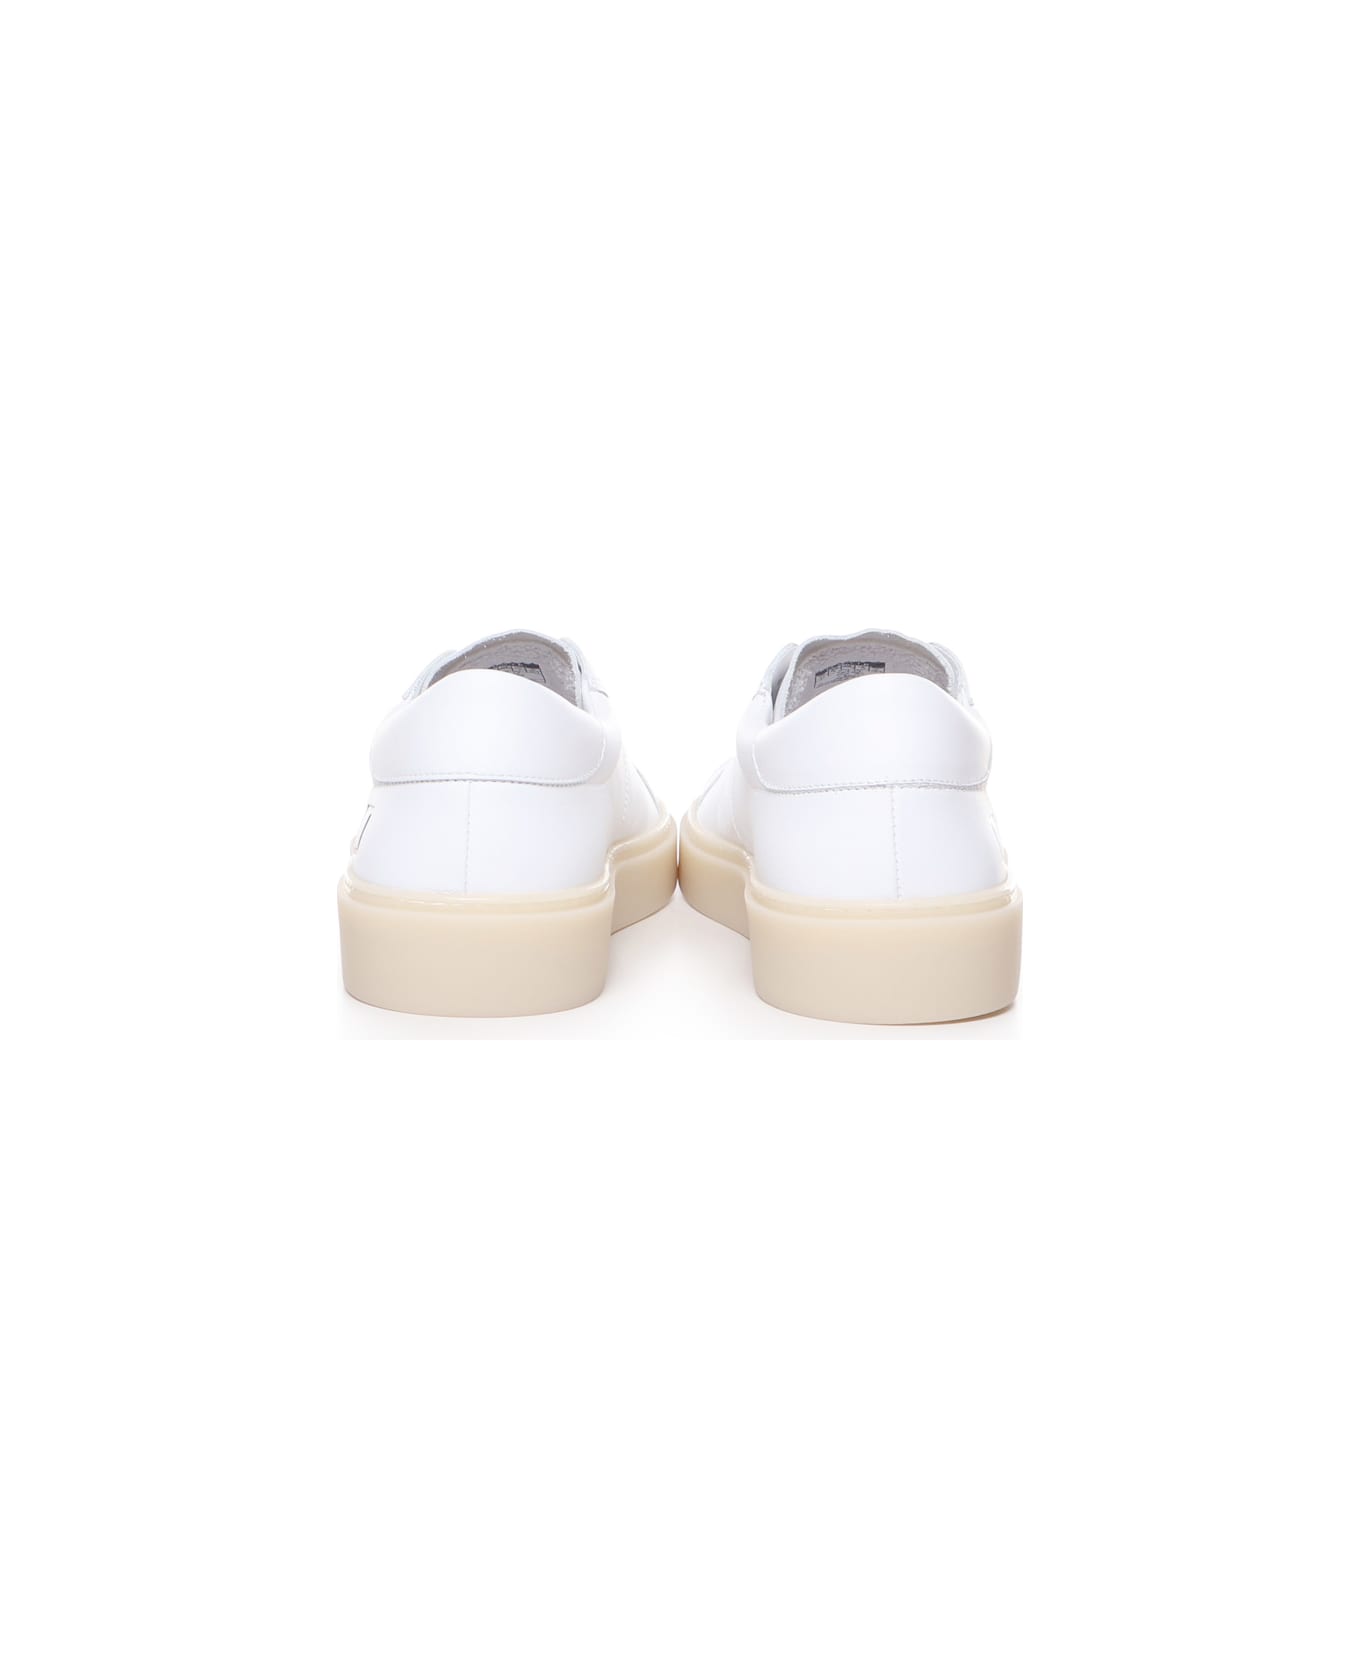 D.A.T.E. Ponente Sneakers - White